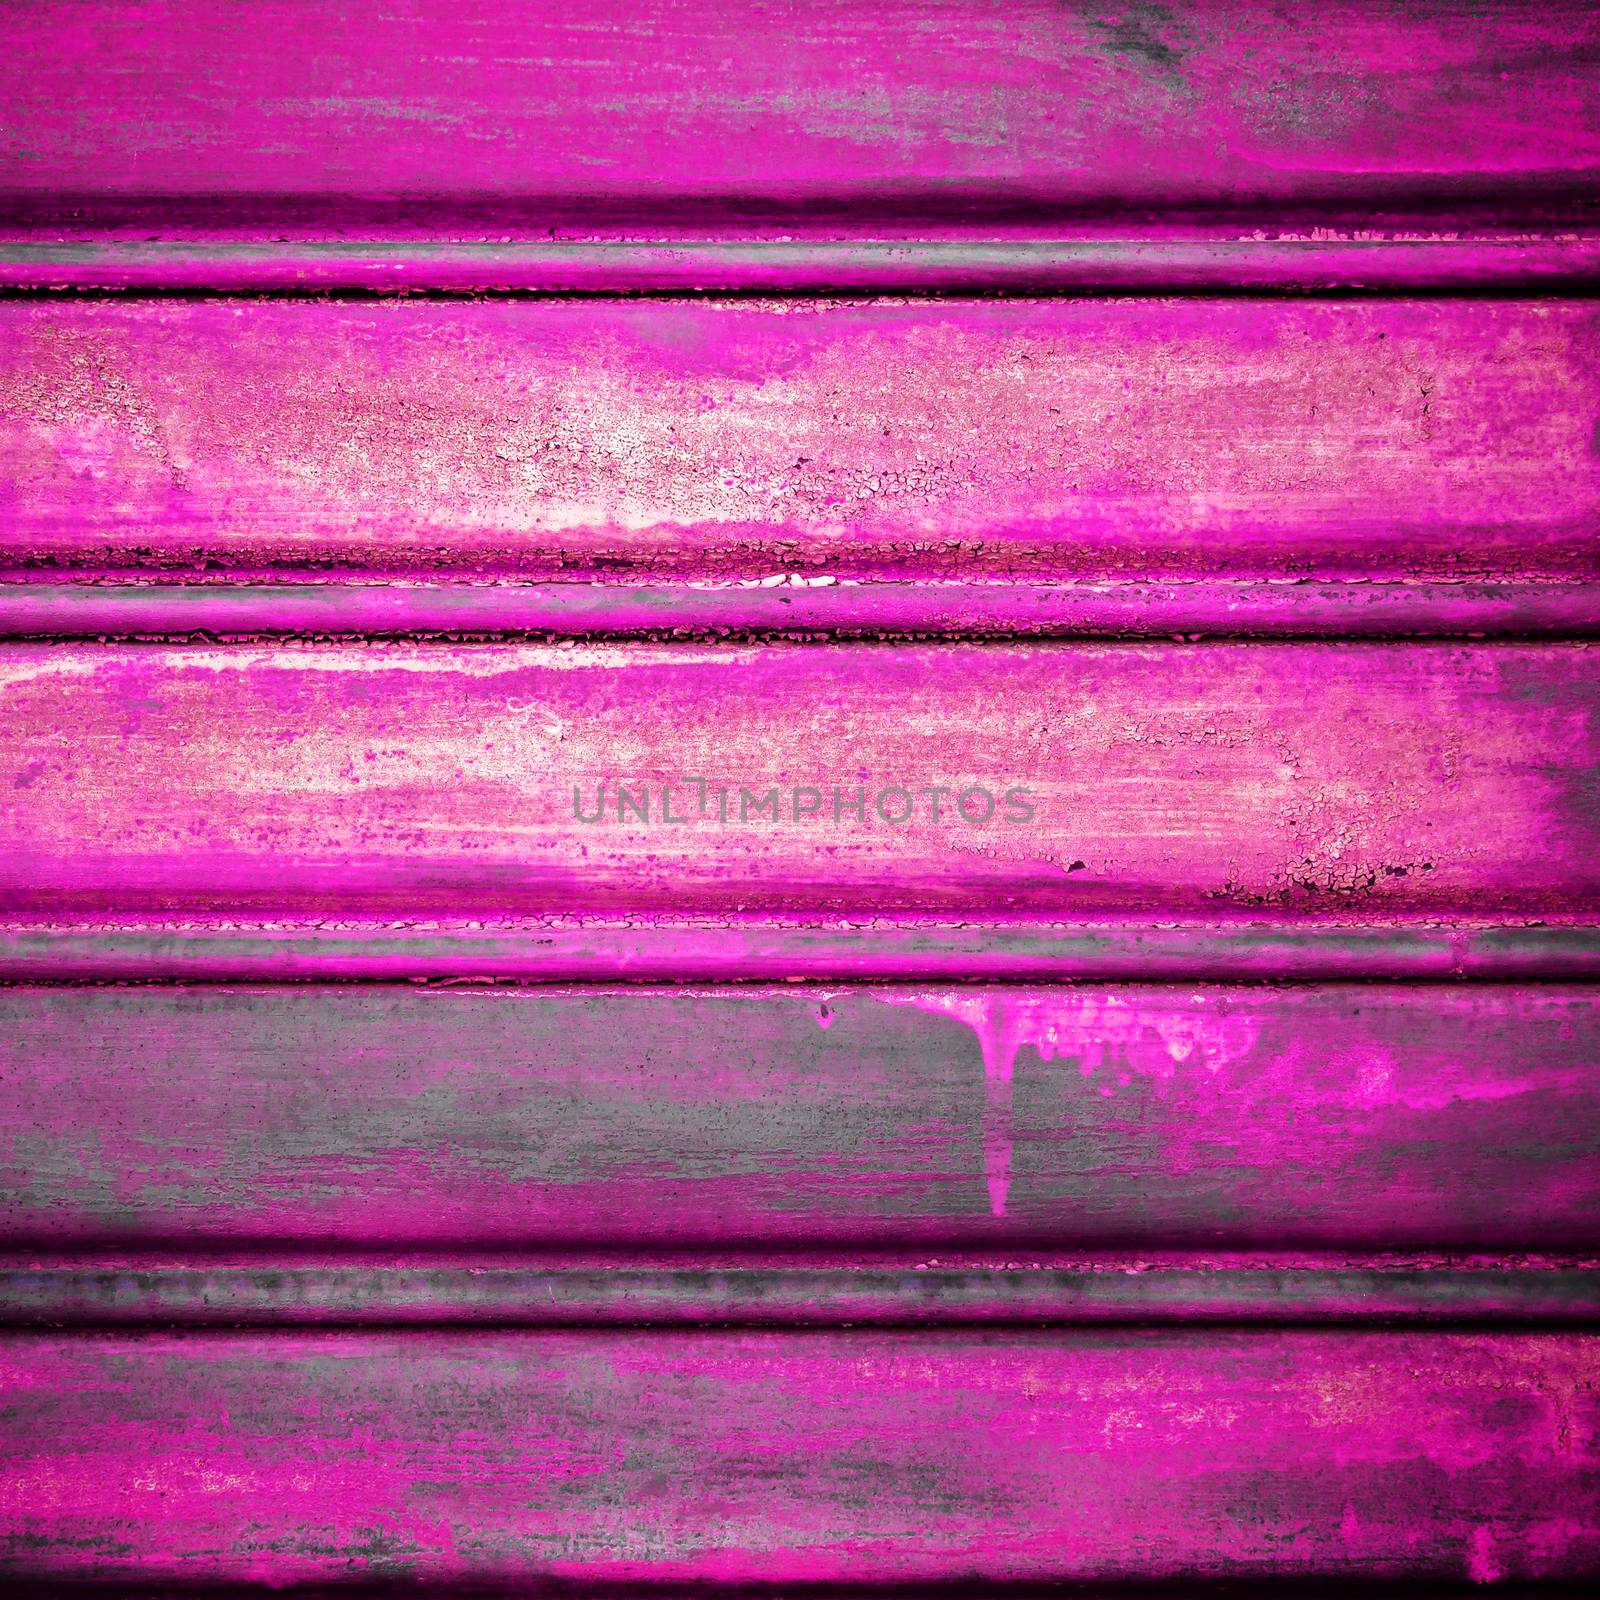 Close-up metallic pattern of rusty pink gate